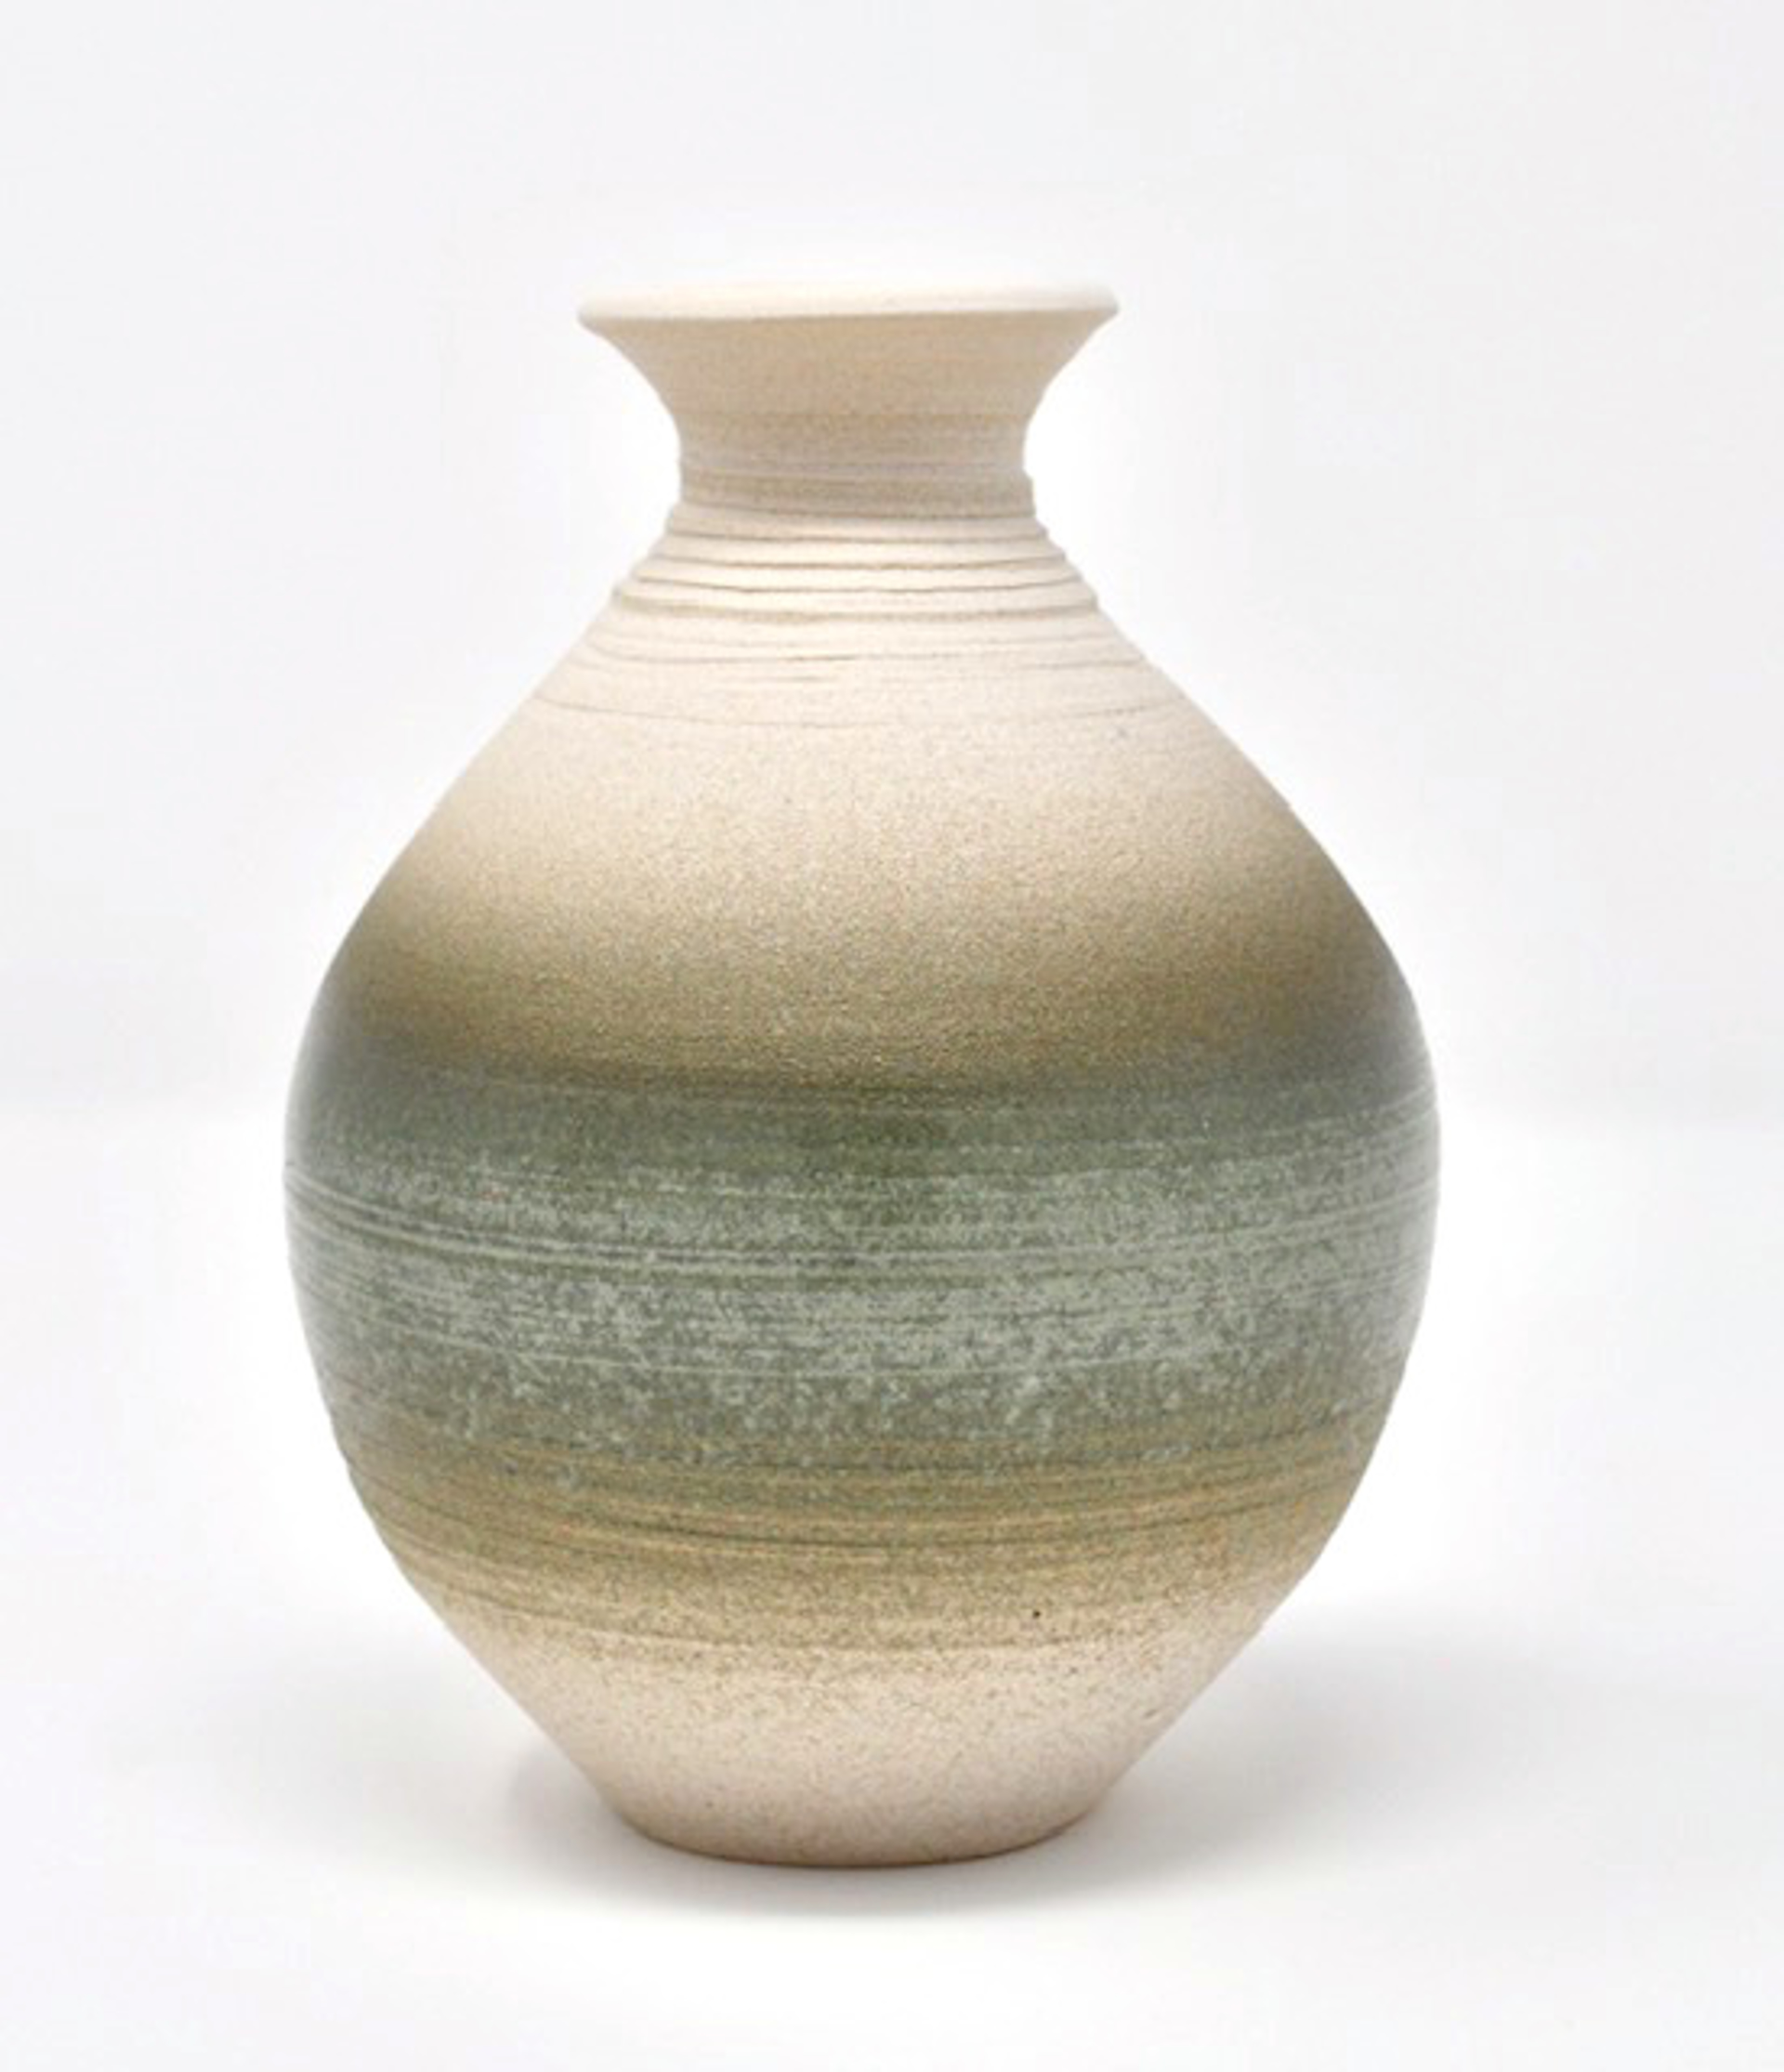 Vase 8 by Heather Bradley